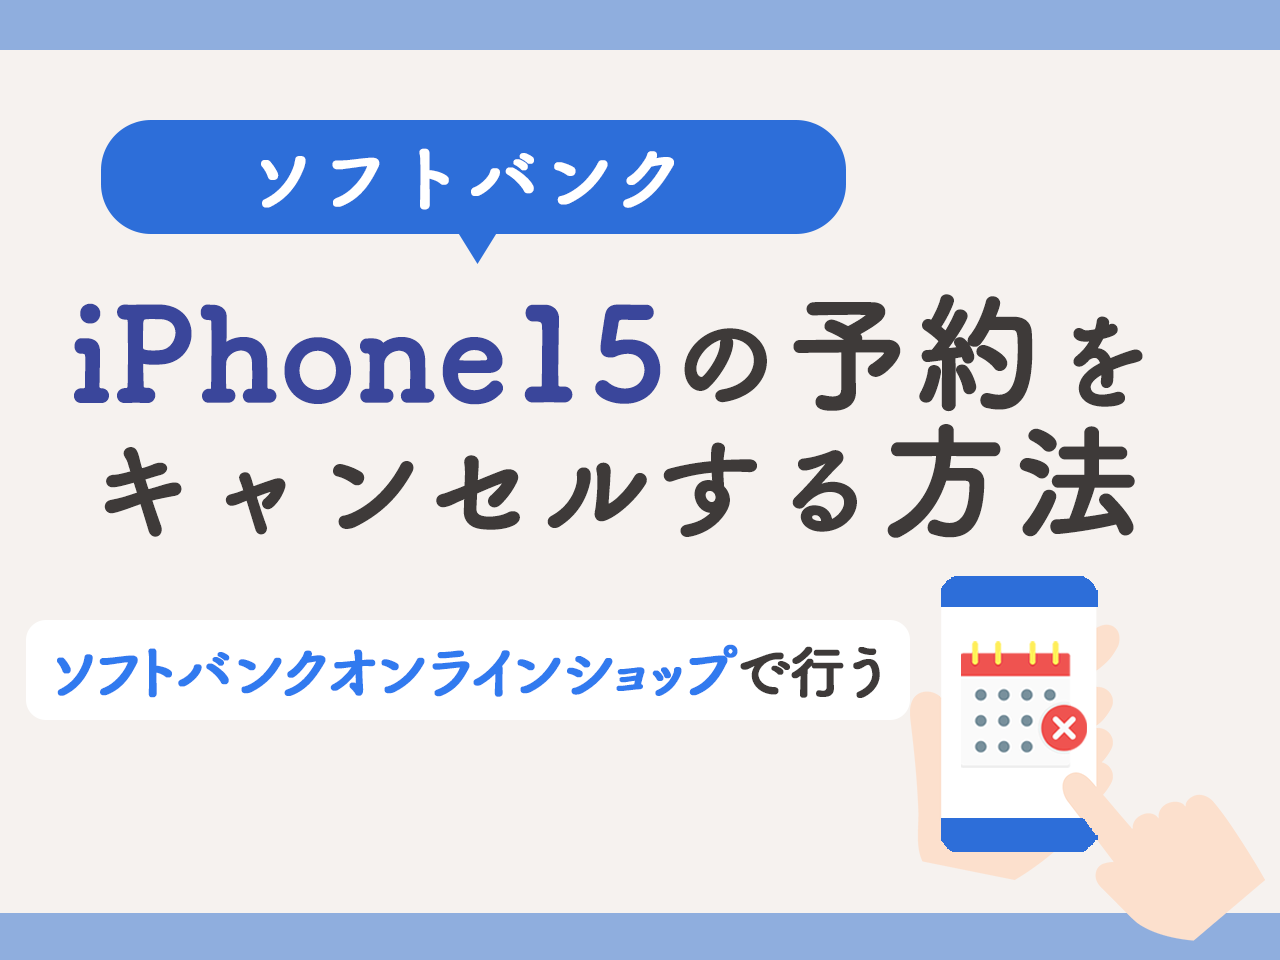 ソフトバンクでiPhone15の予約をキャンセルする方法